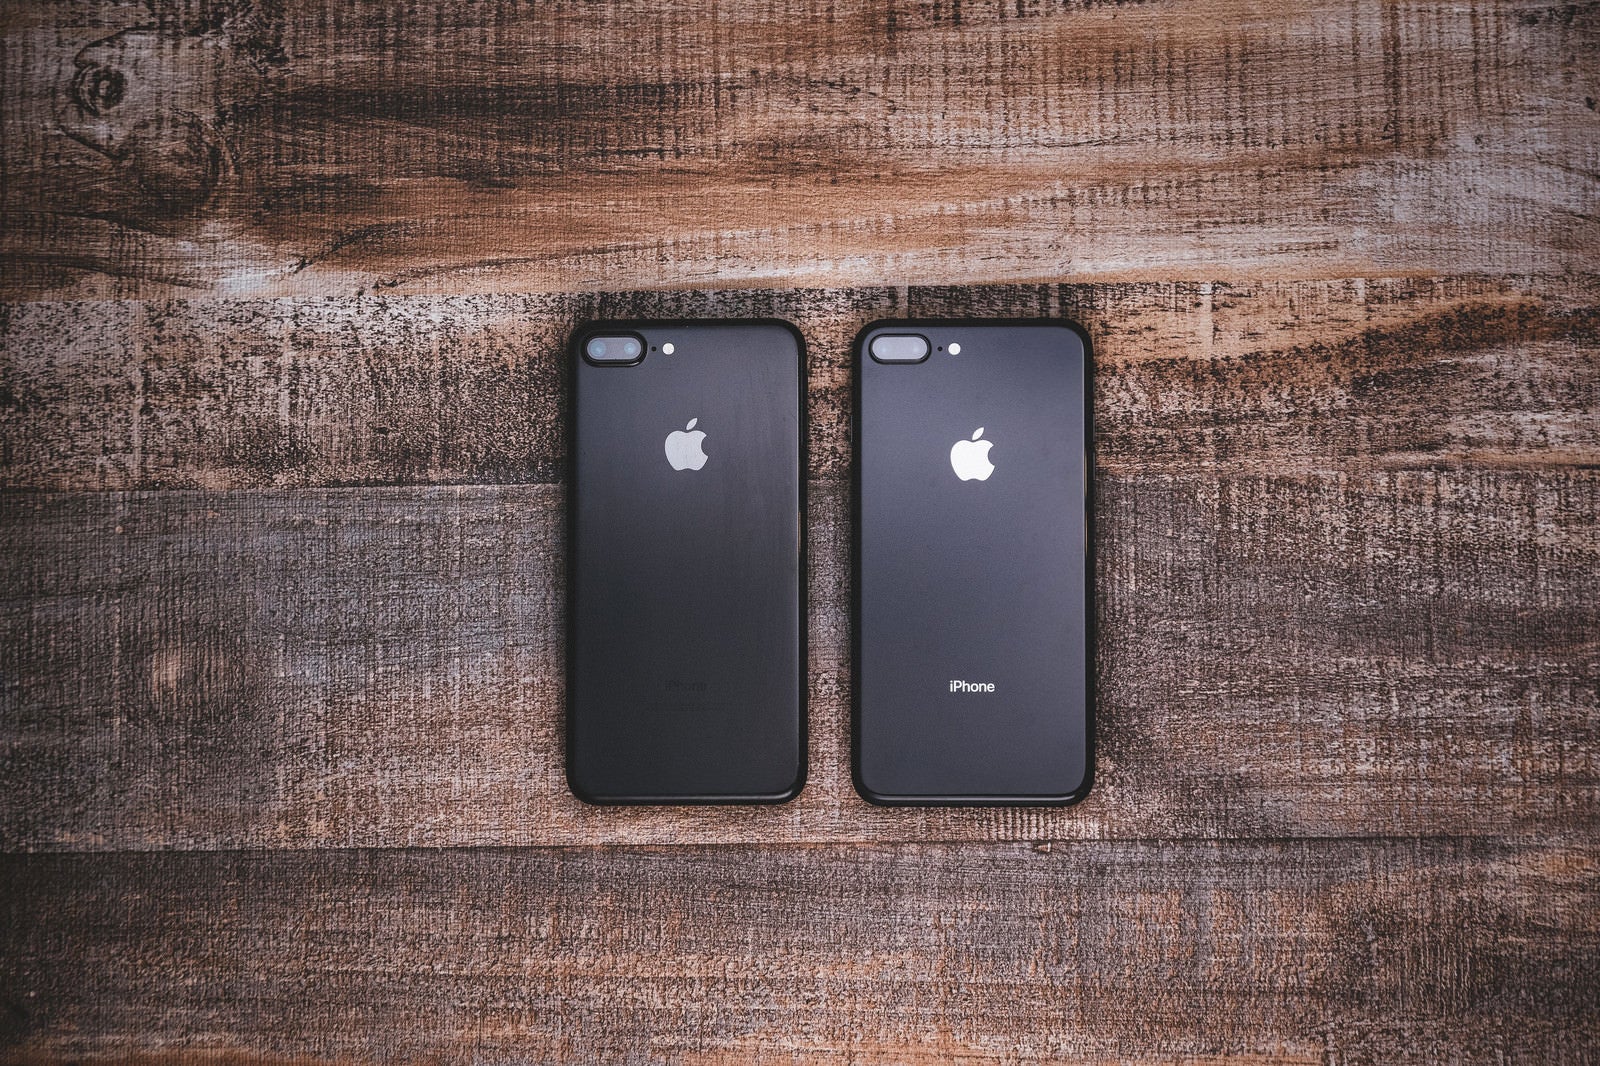 「iPhone 7 ジェットブラックとiPhone 8 スペースグレイの外観比較」の写真